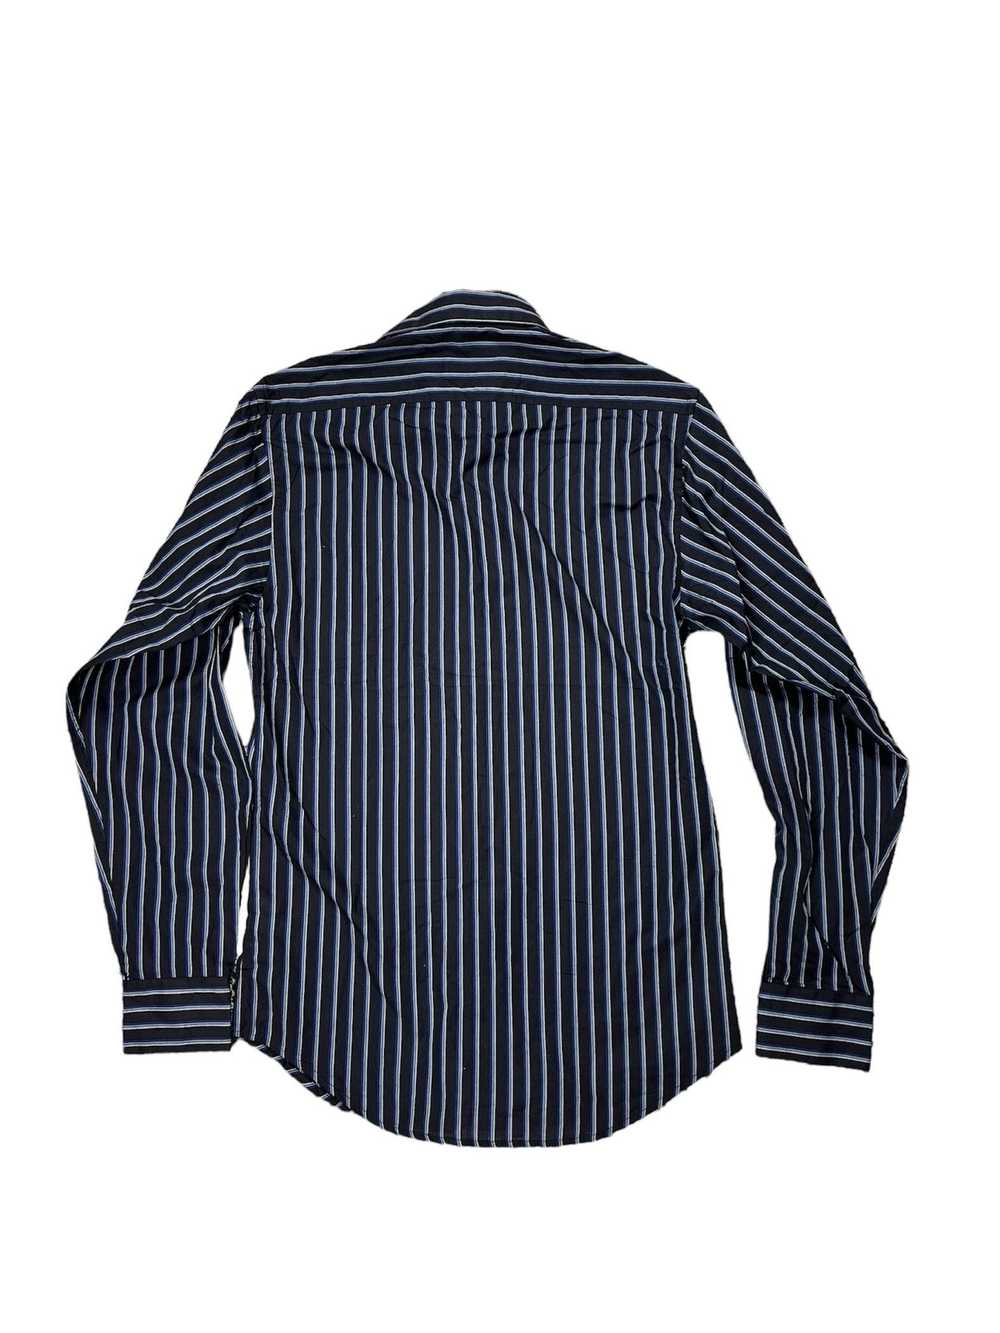 Vintage × Yves Saint Laurent Striped Button-Up Sh… - image 2